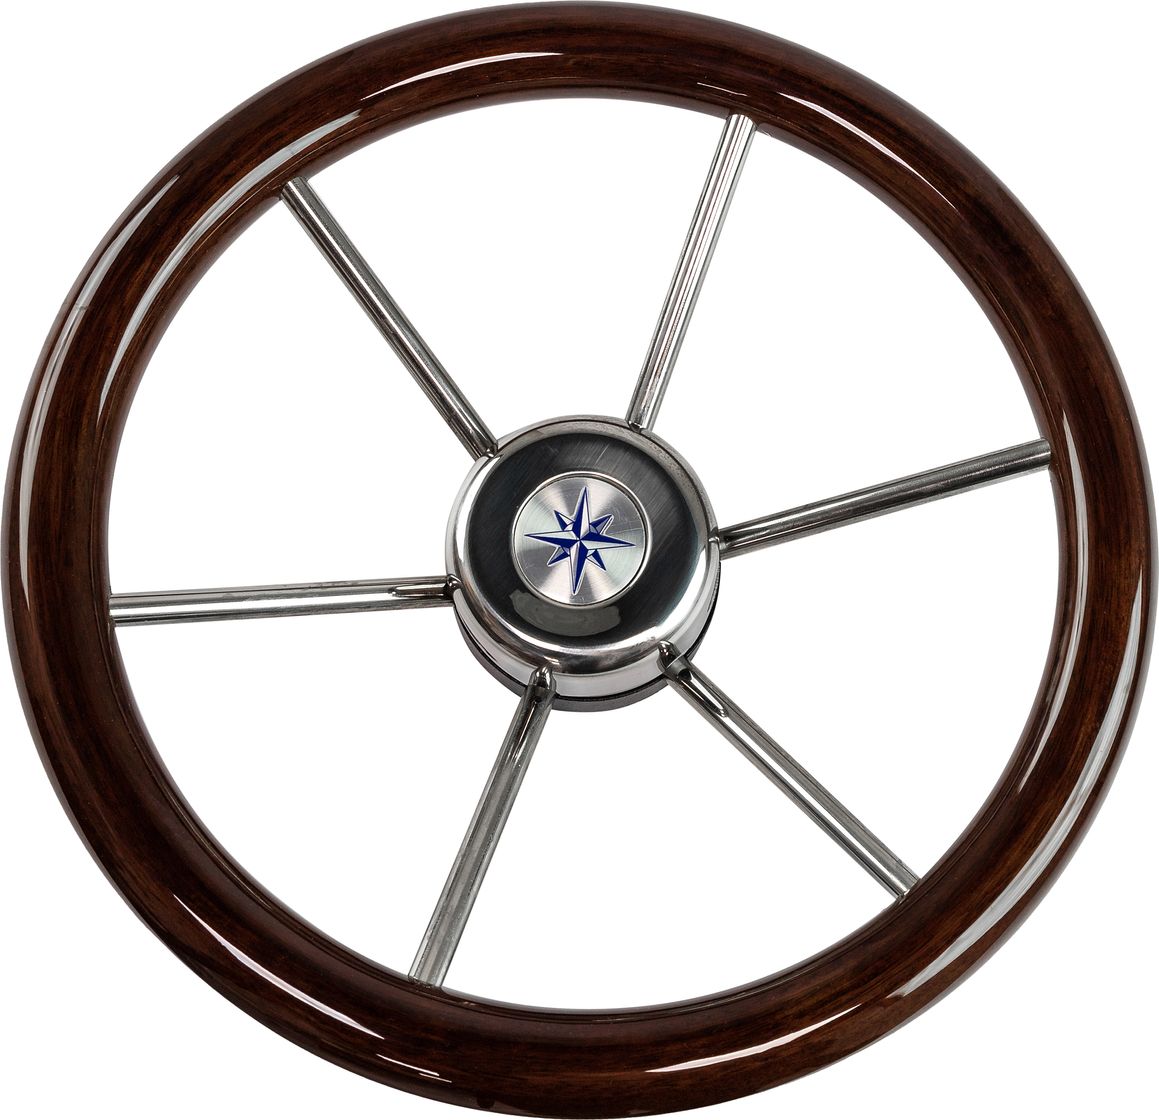 Рулевое колесо LEADER WOOD деревянный обод серебряные спицы д. 340 мм VN7340-33 рулевое колесо leader tanegum обод серебряные спицы д 400 мм vn7400 01